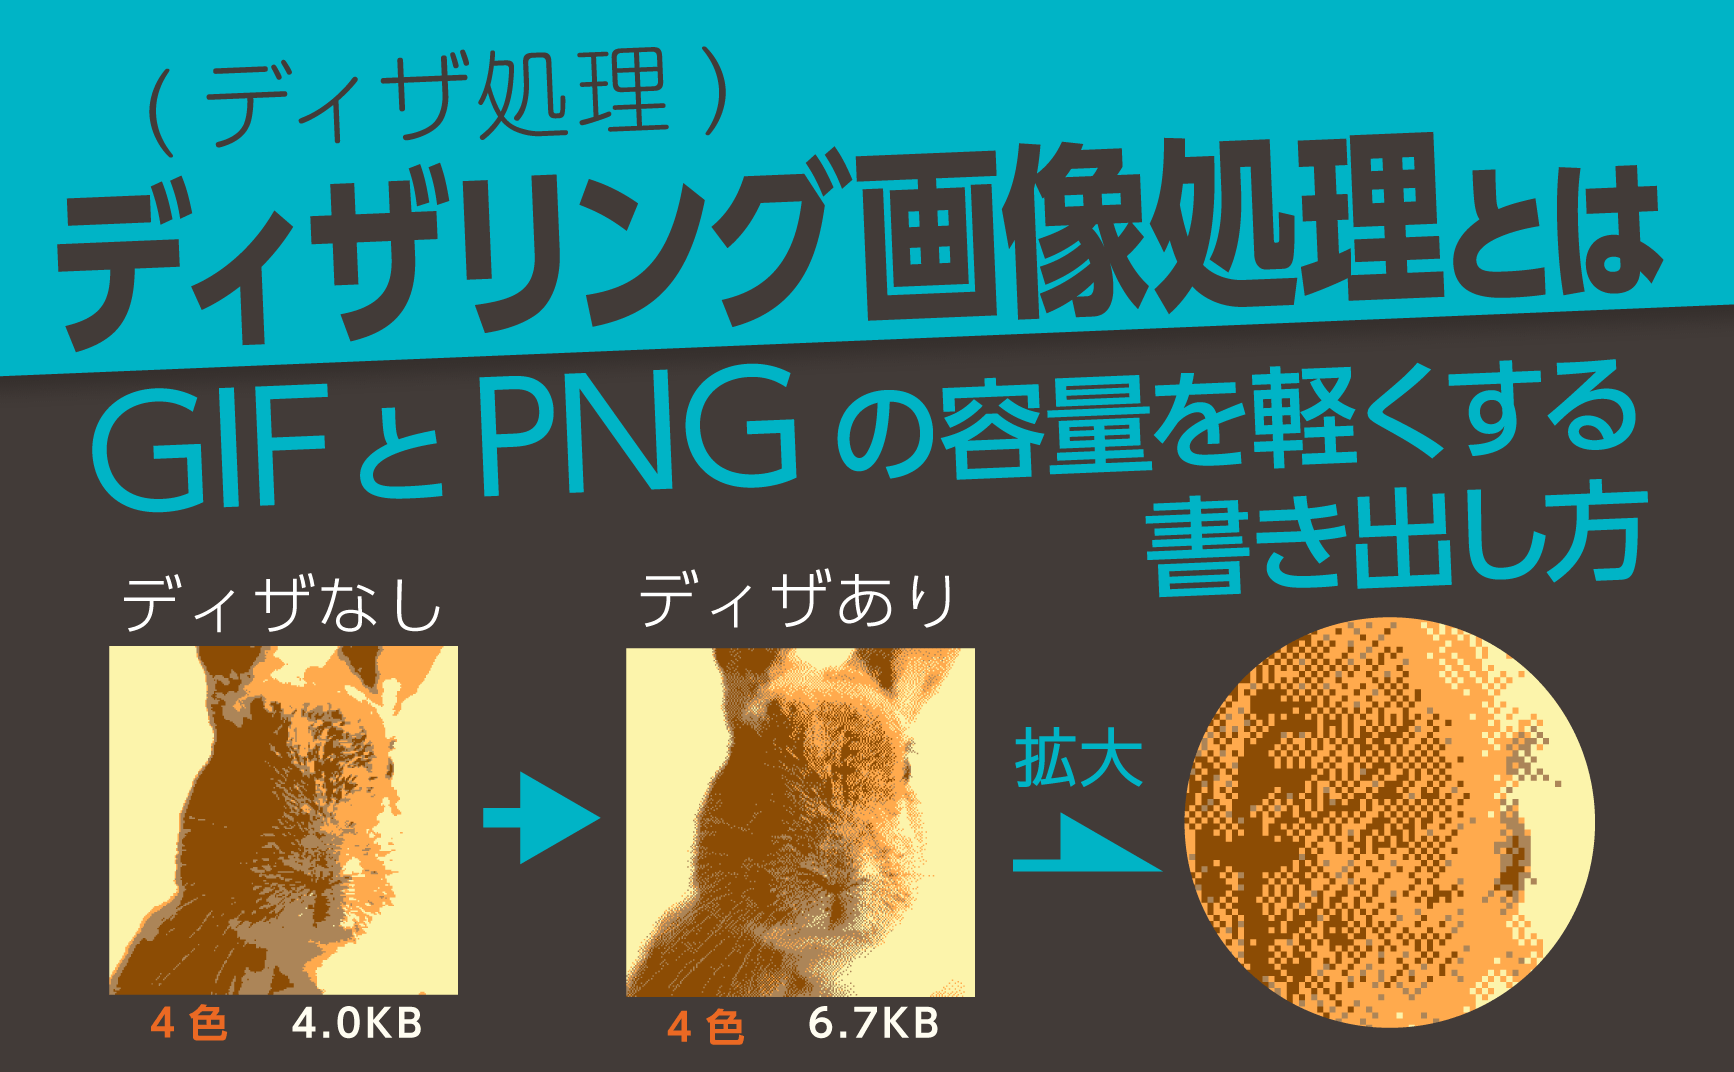 ディザリング画像処理(ディザ処理)とは【GIFとPNGの容量を軽くする書き出し方】 | デジマースブログ